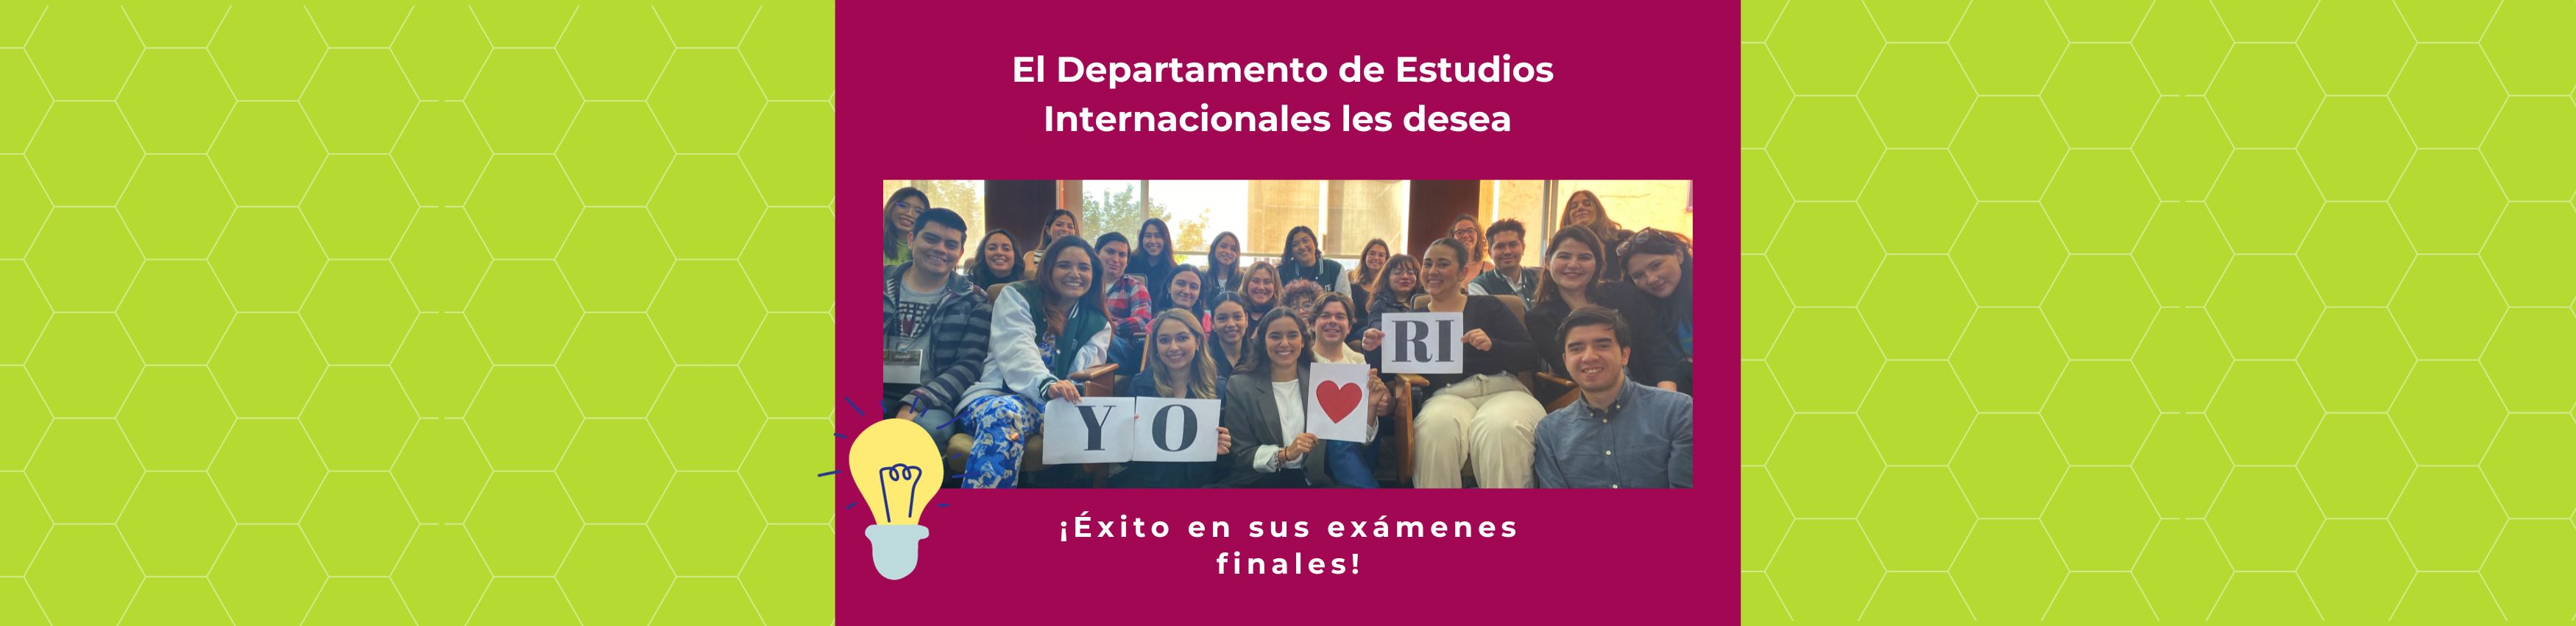 El Departamento de Estudios Internacionales les desea ¡Éxito en sus exámenes finales!